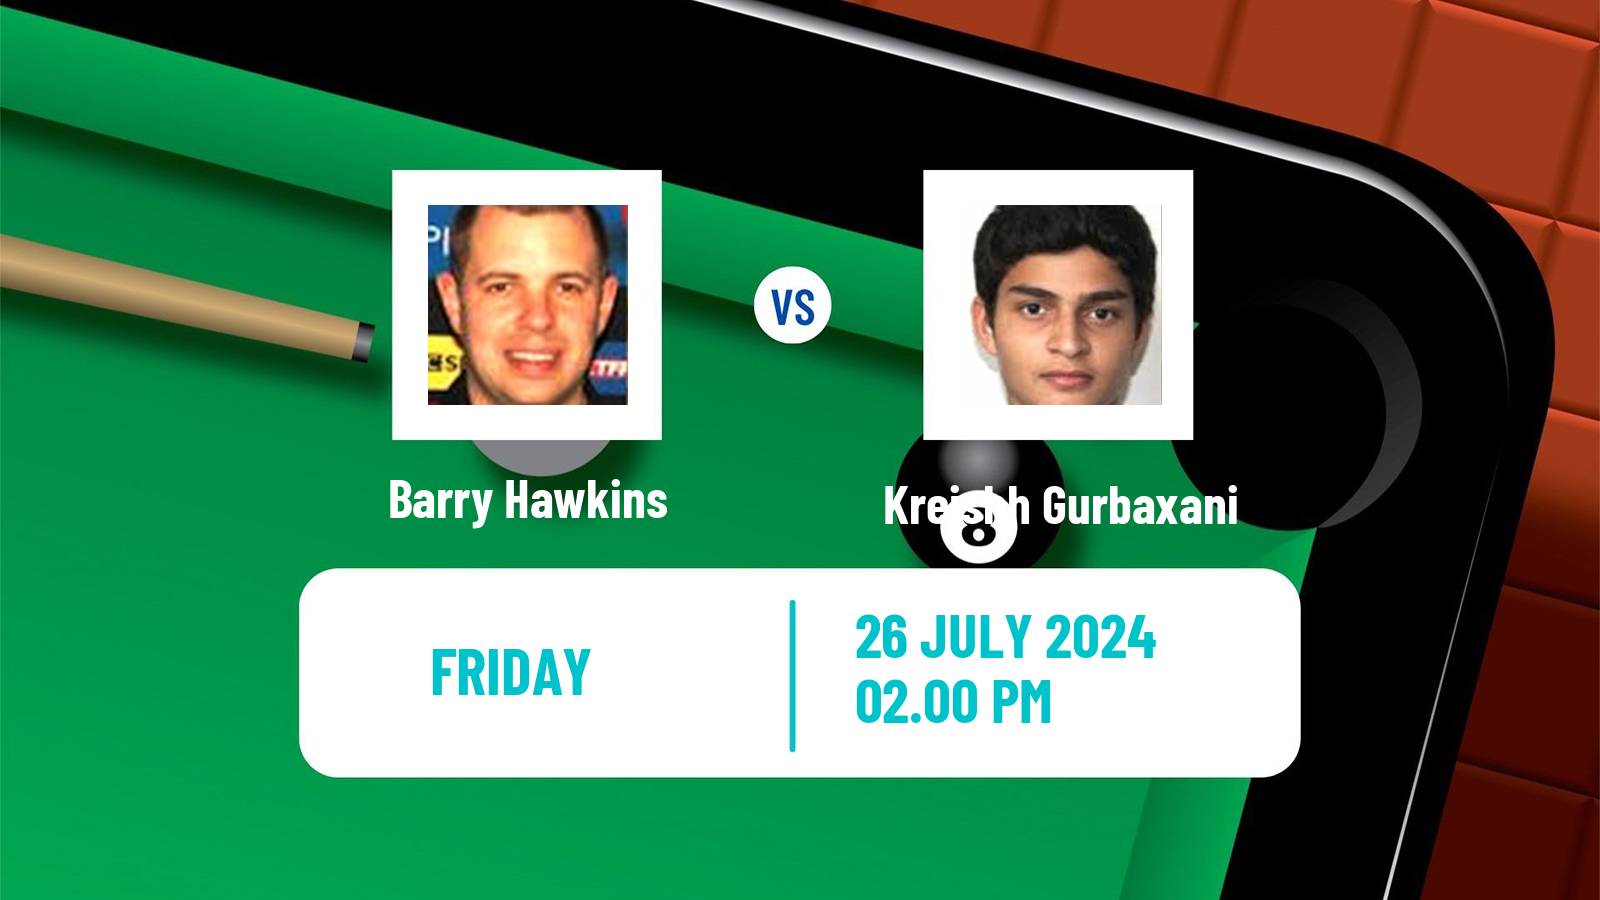 Snooker Grand Prix Barry Hawkins - Kreishh Gurbaxani